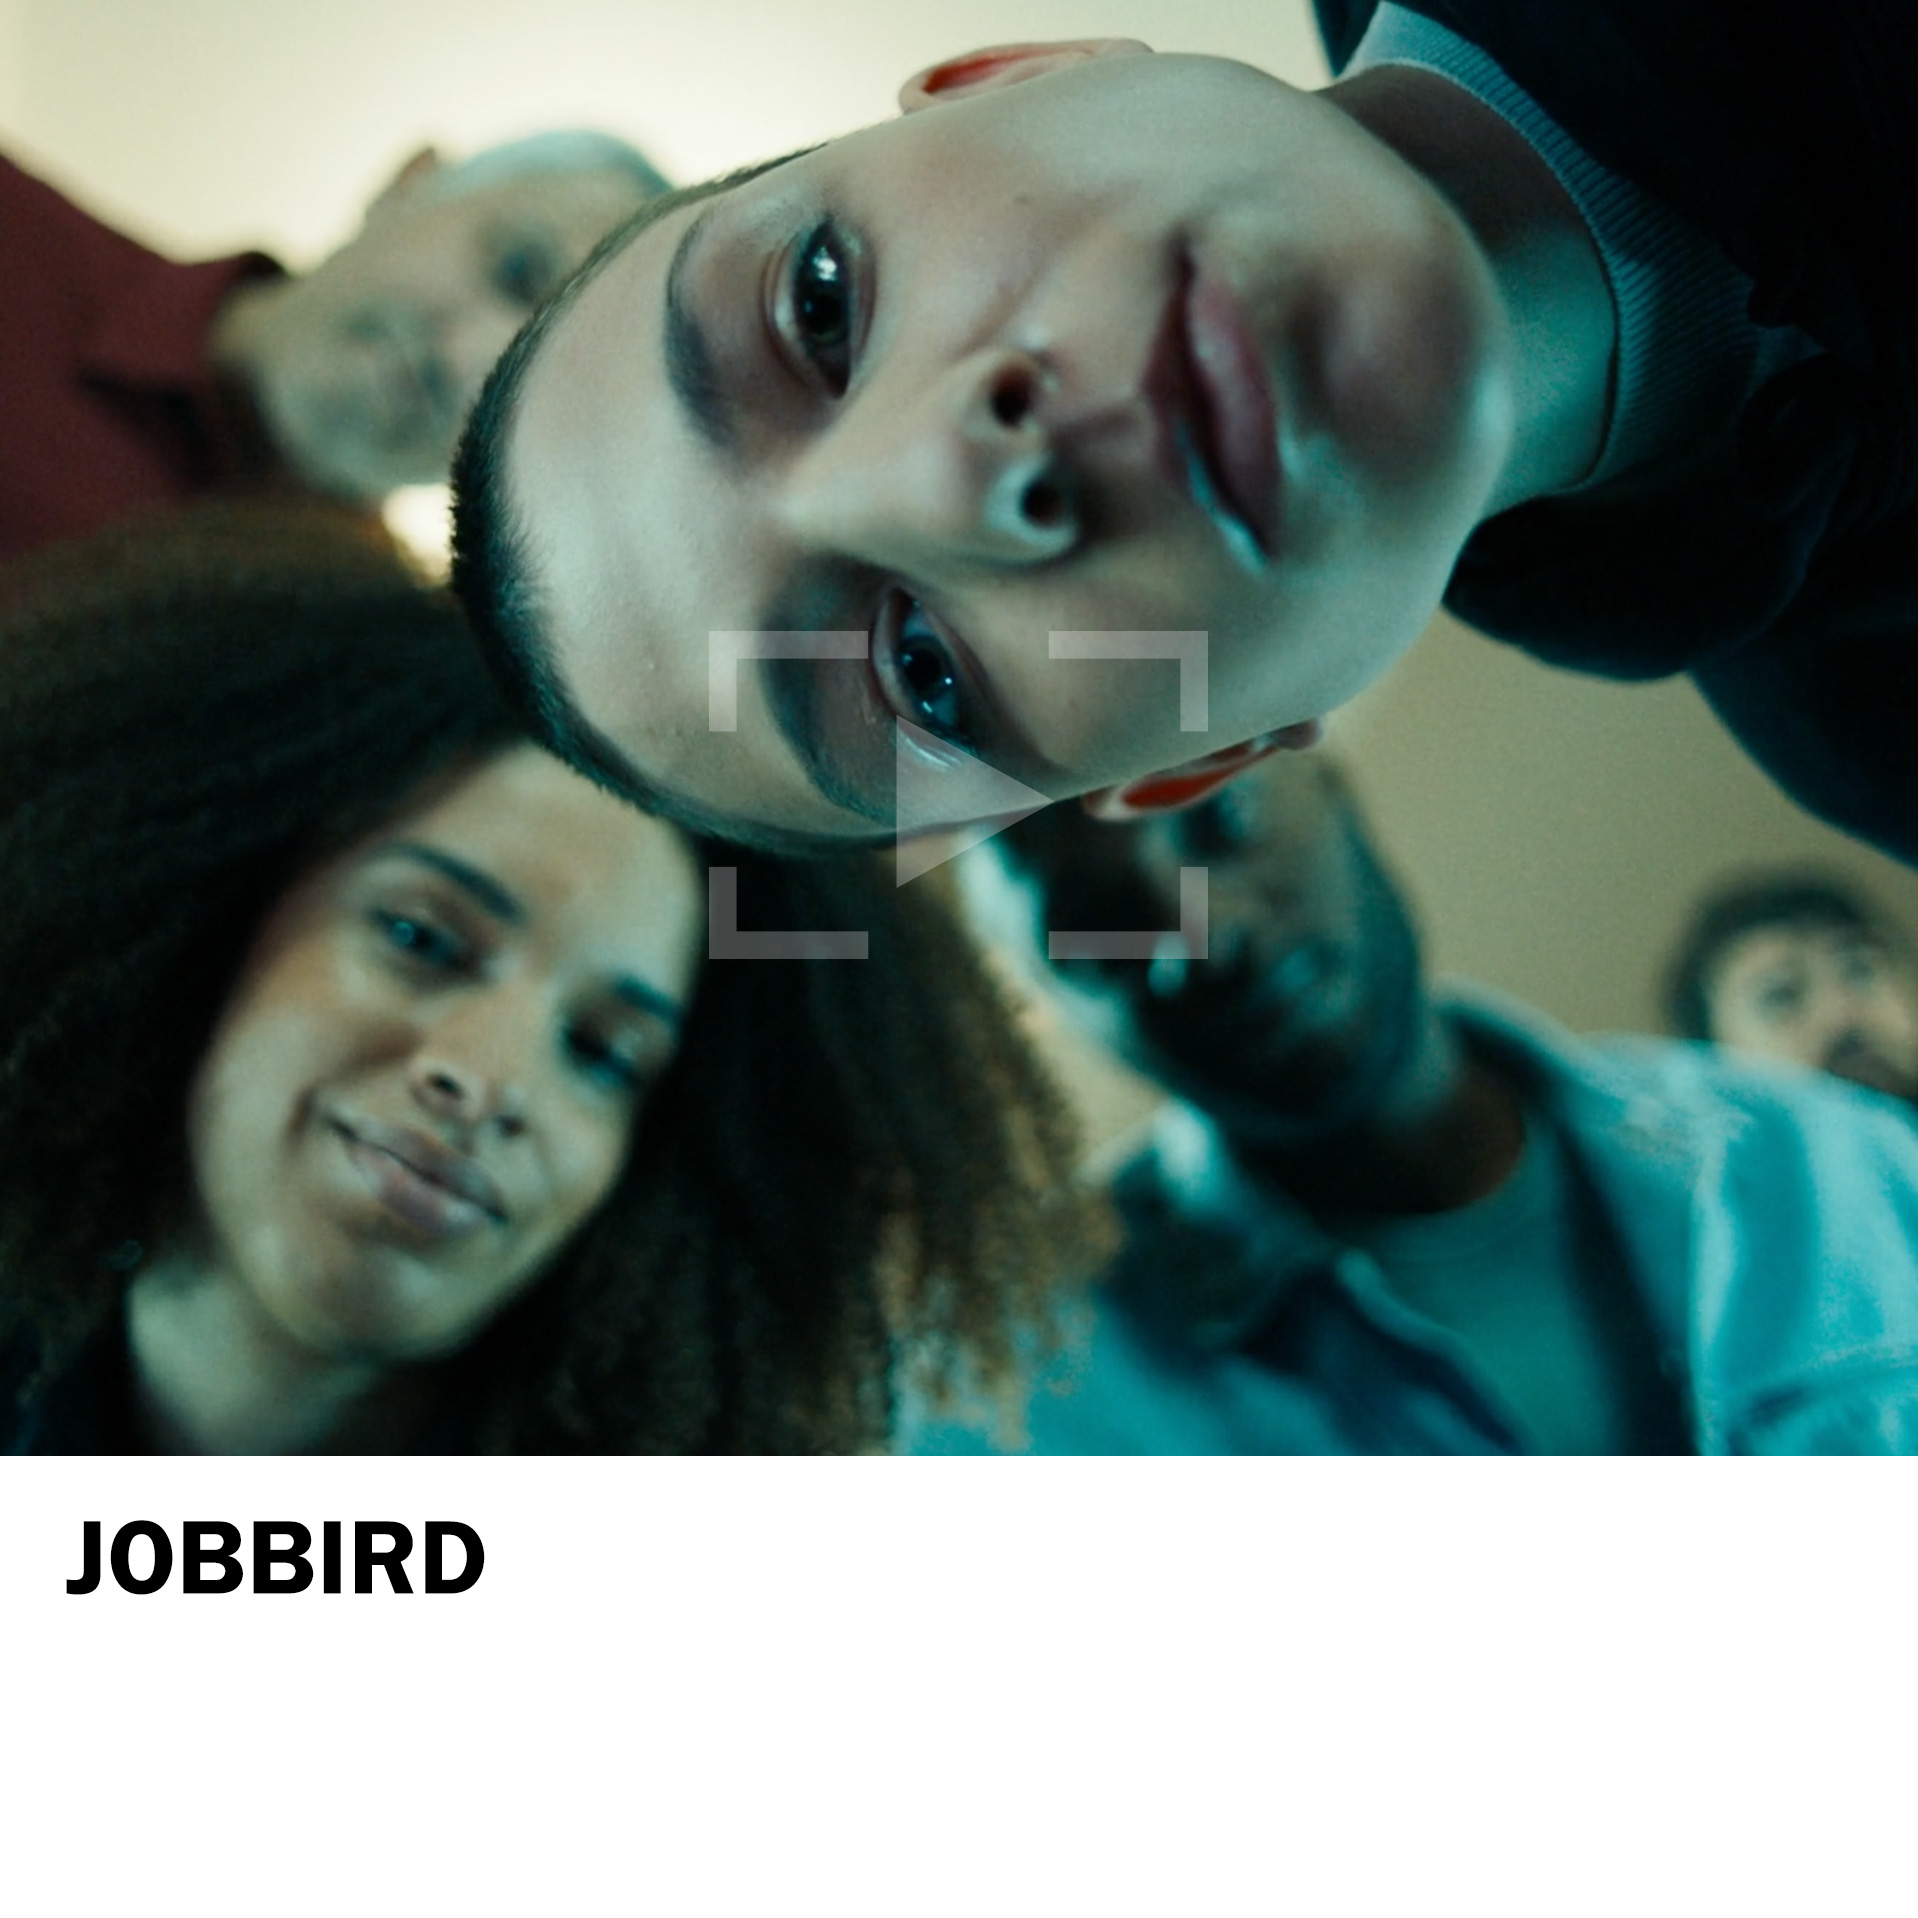 Jobbird